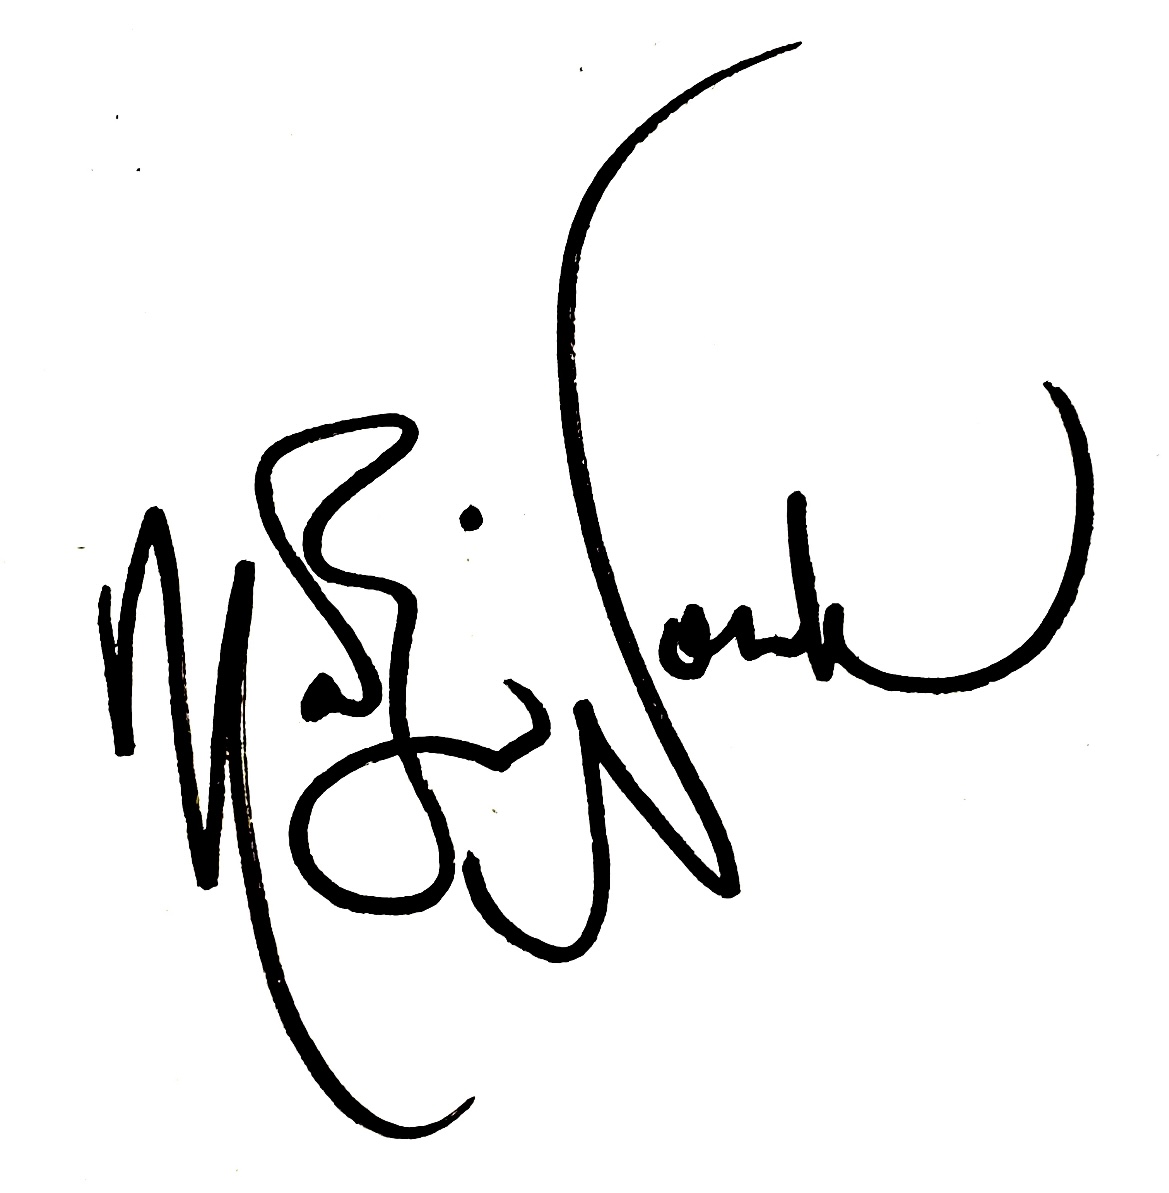 Marilyn Nonken's signature